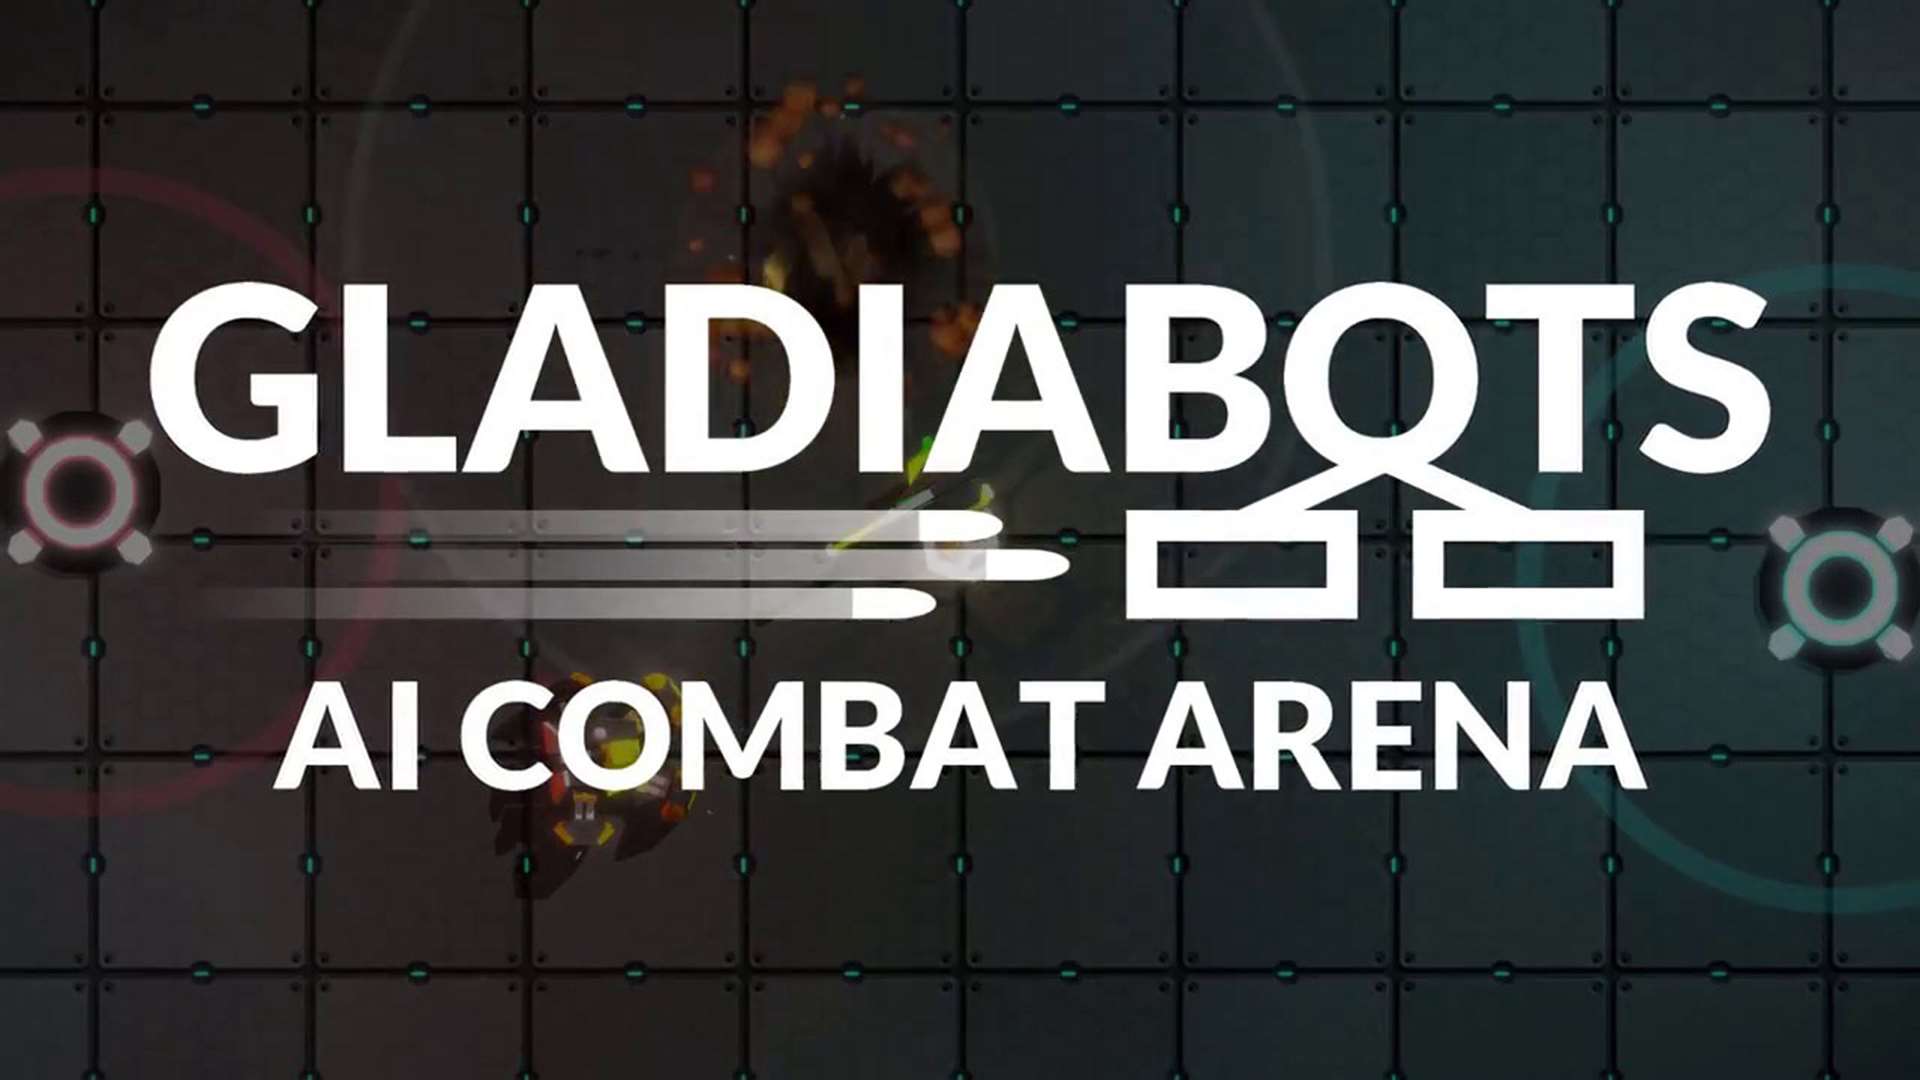 Gladiabots. Picture: Handout/PA